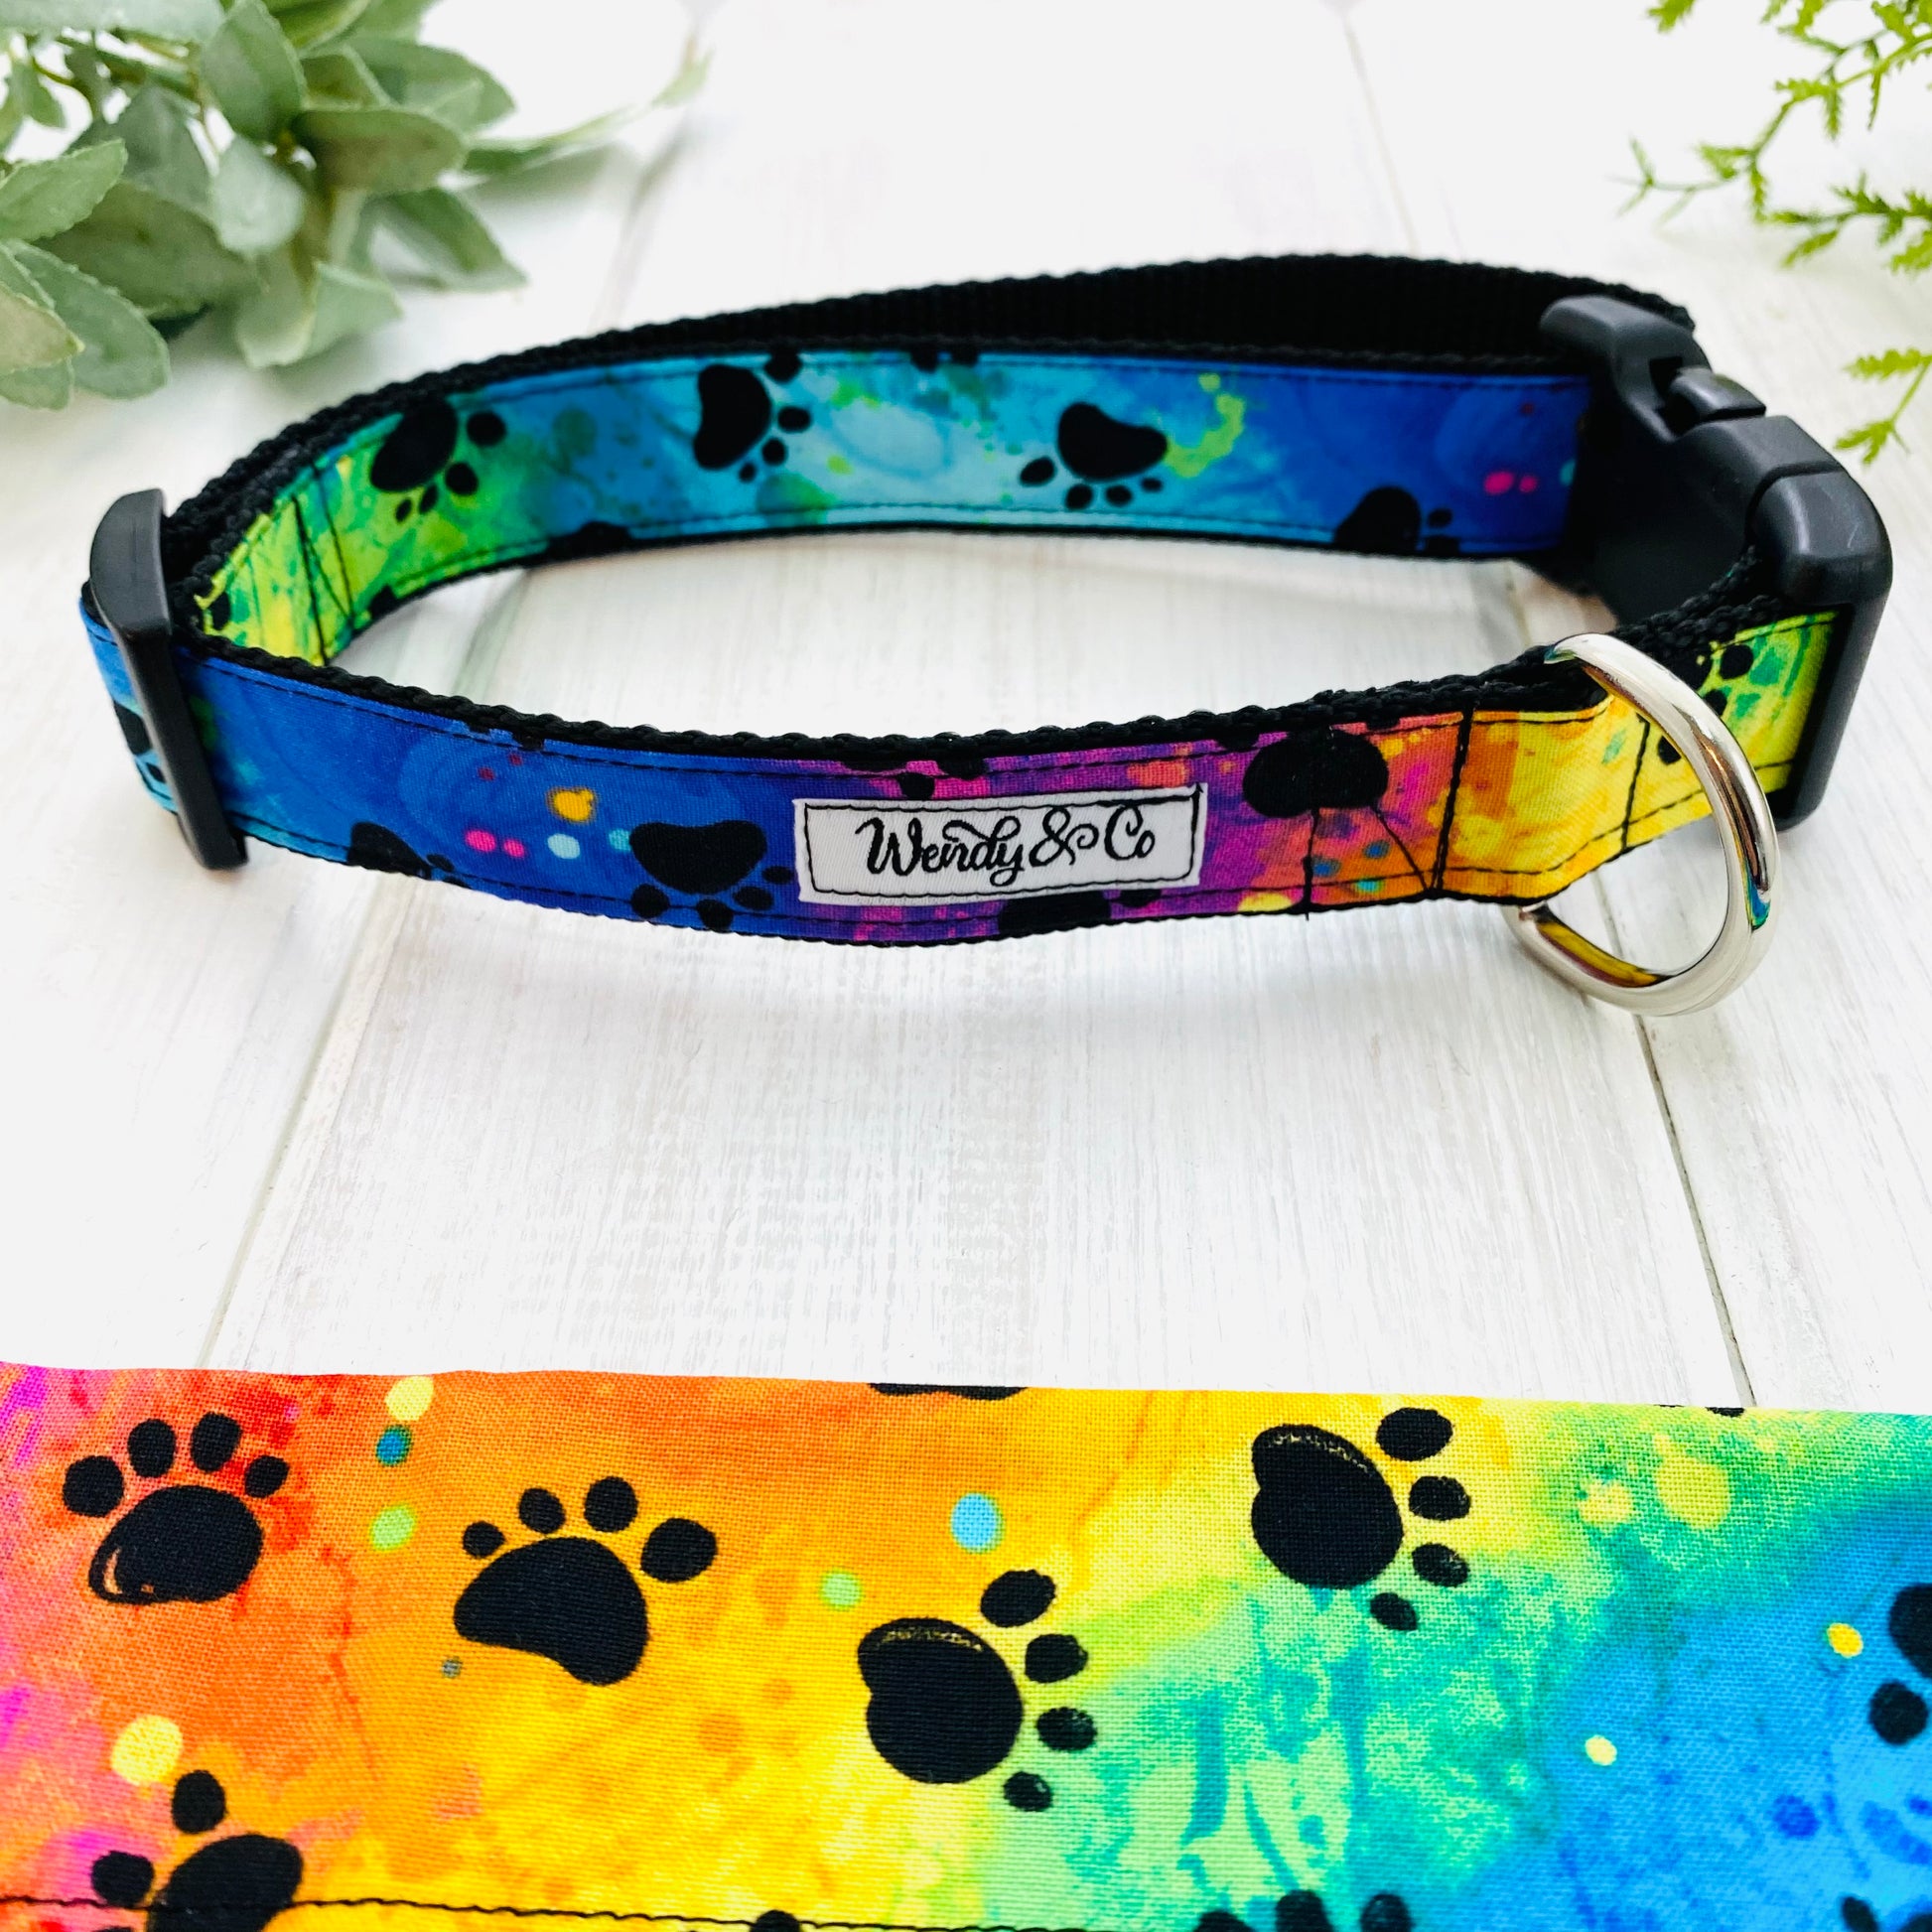 Rainbow tie dye print dog collar.